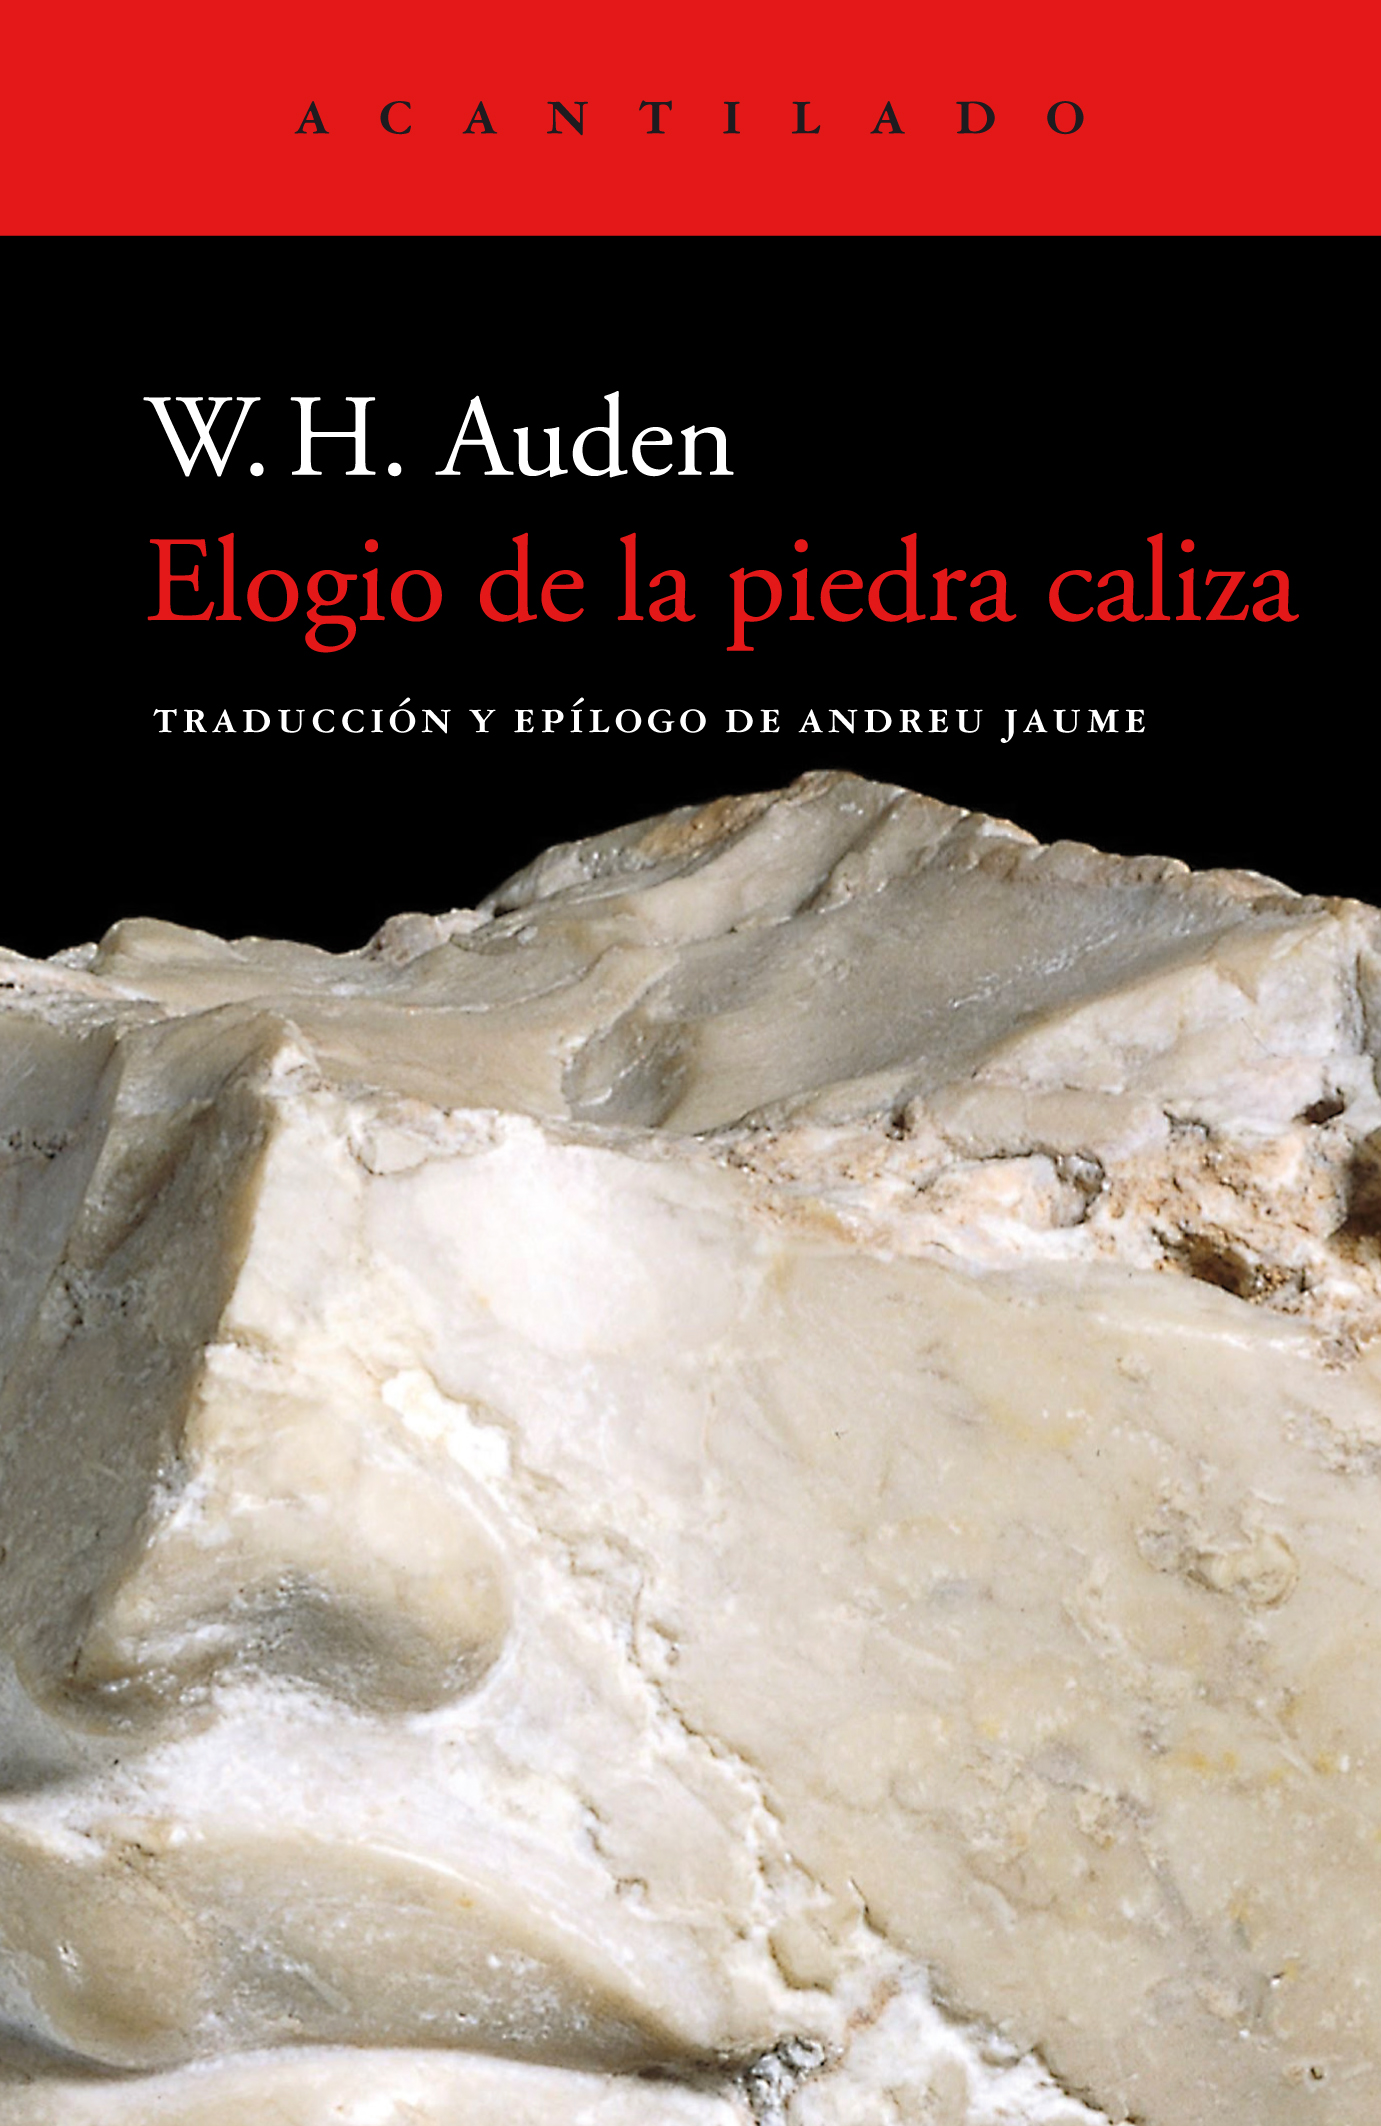 Elogio de la piedra caliza, de W. H. Auden